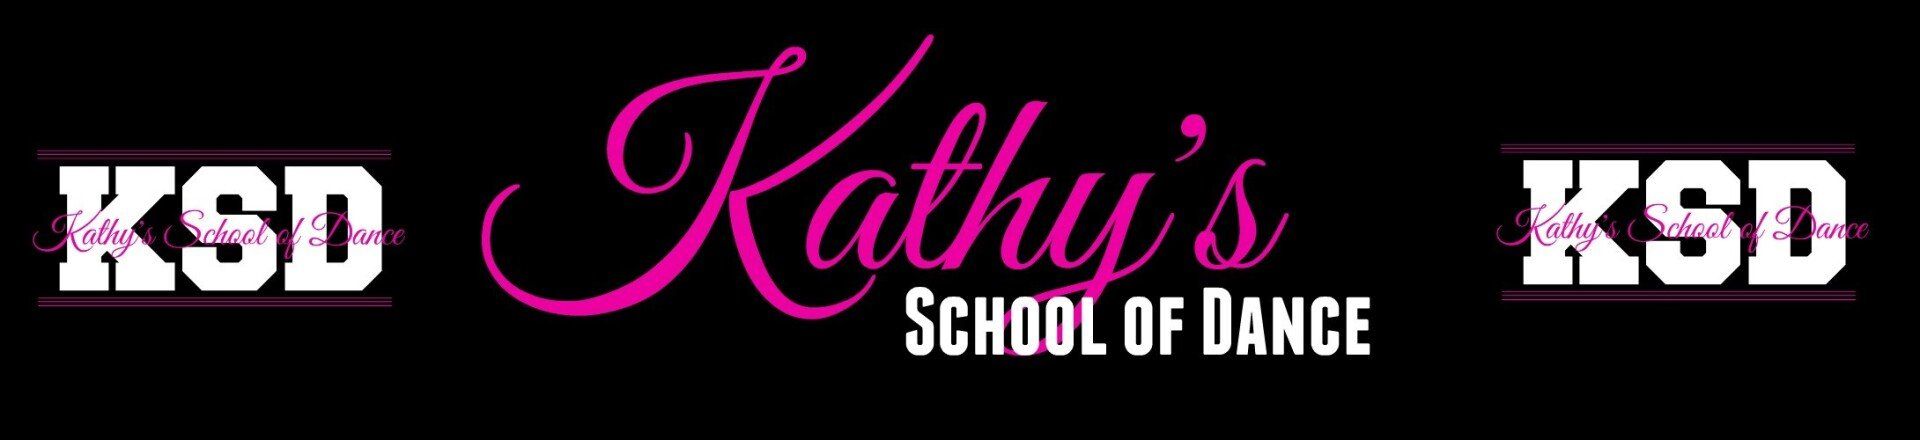 Kathy's School of Dance